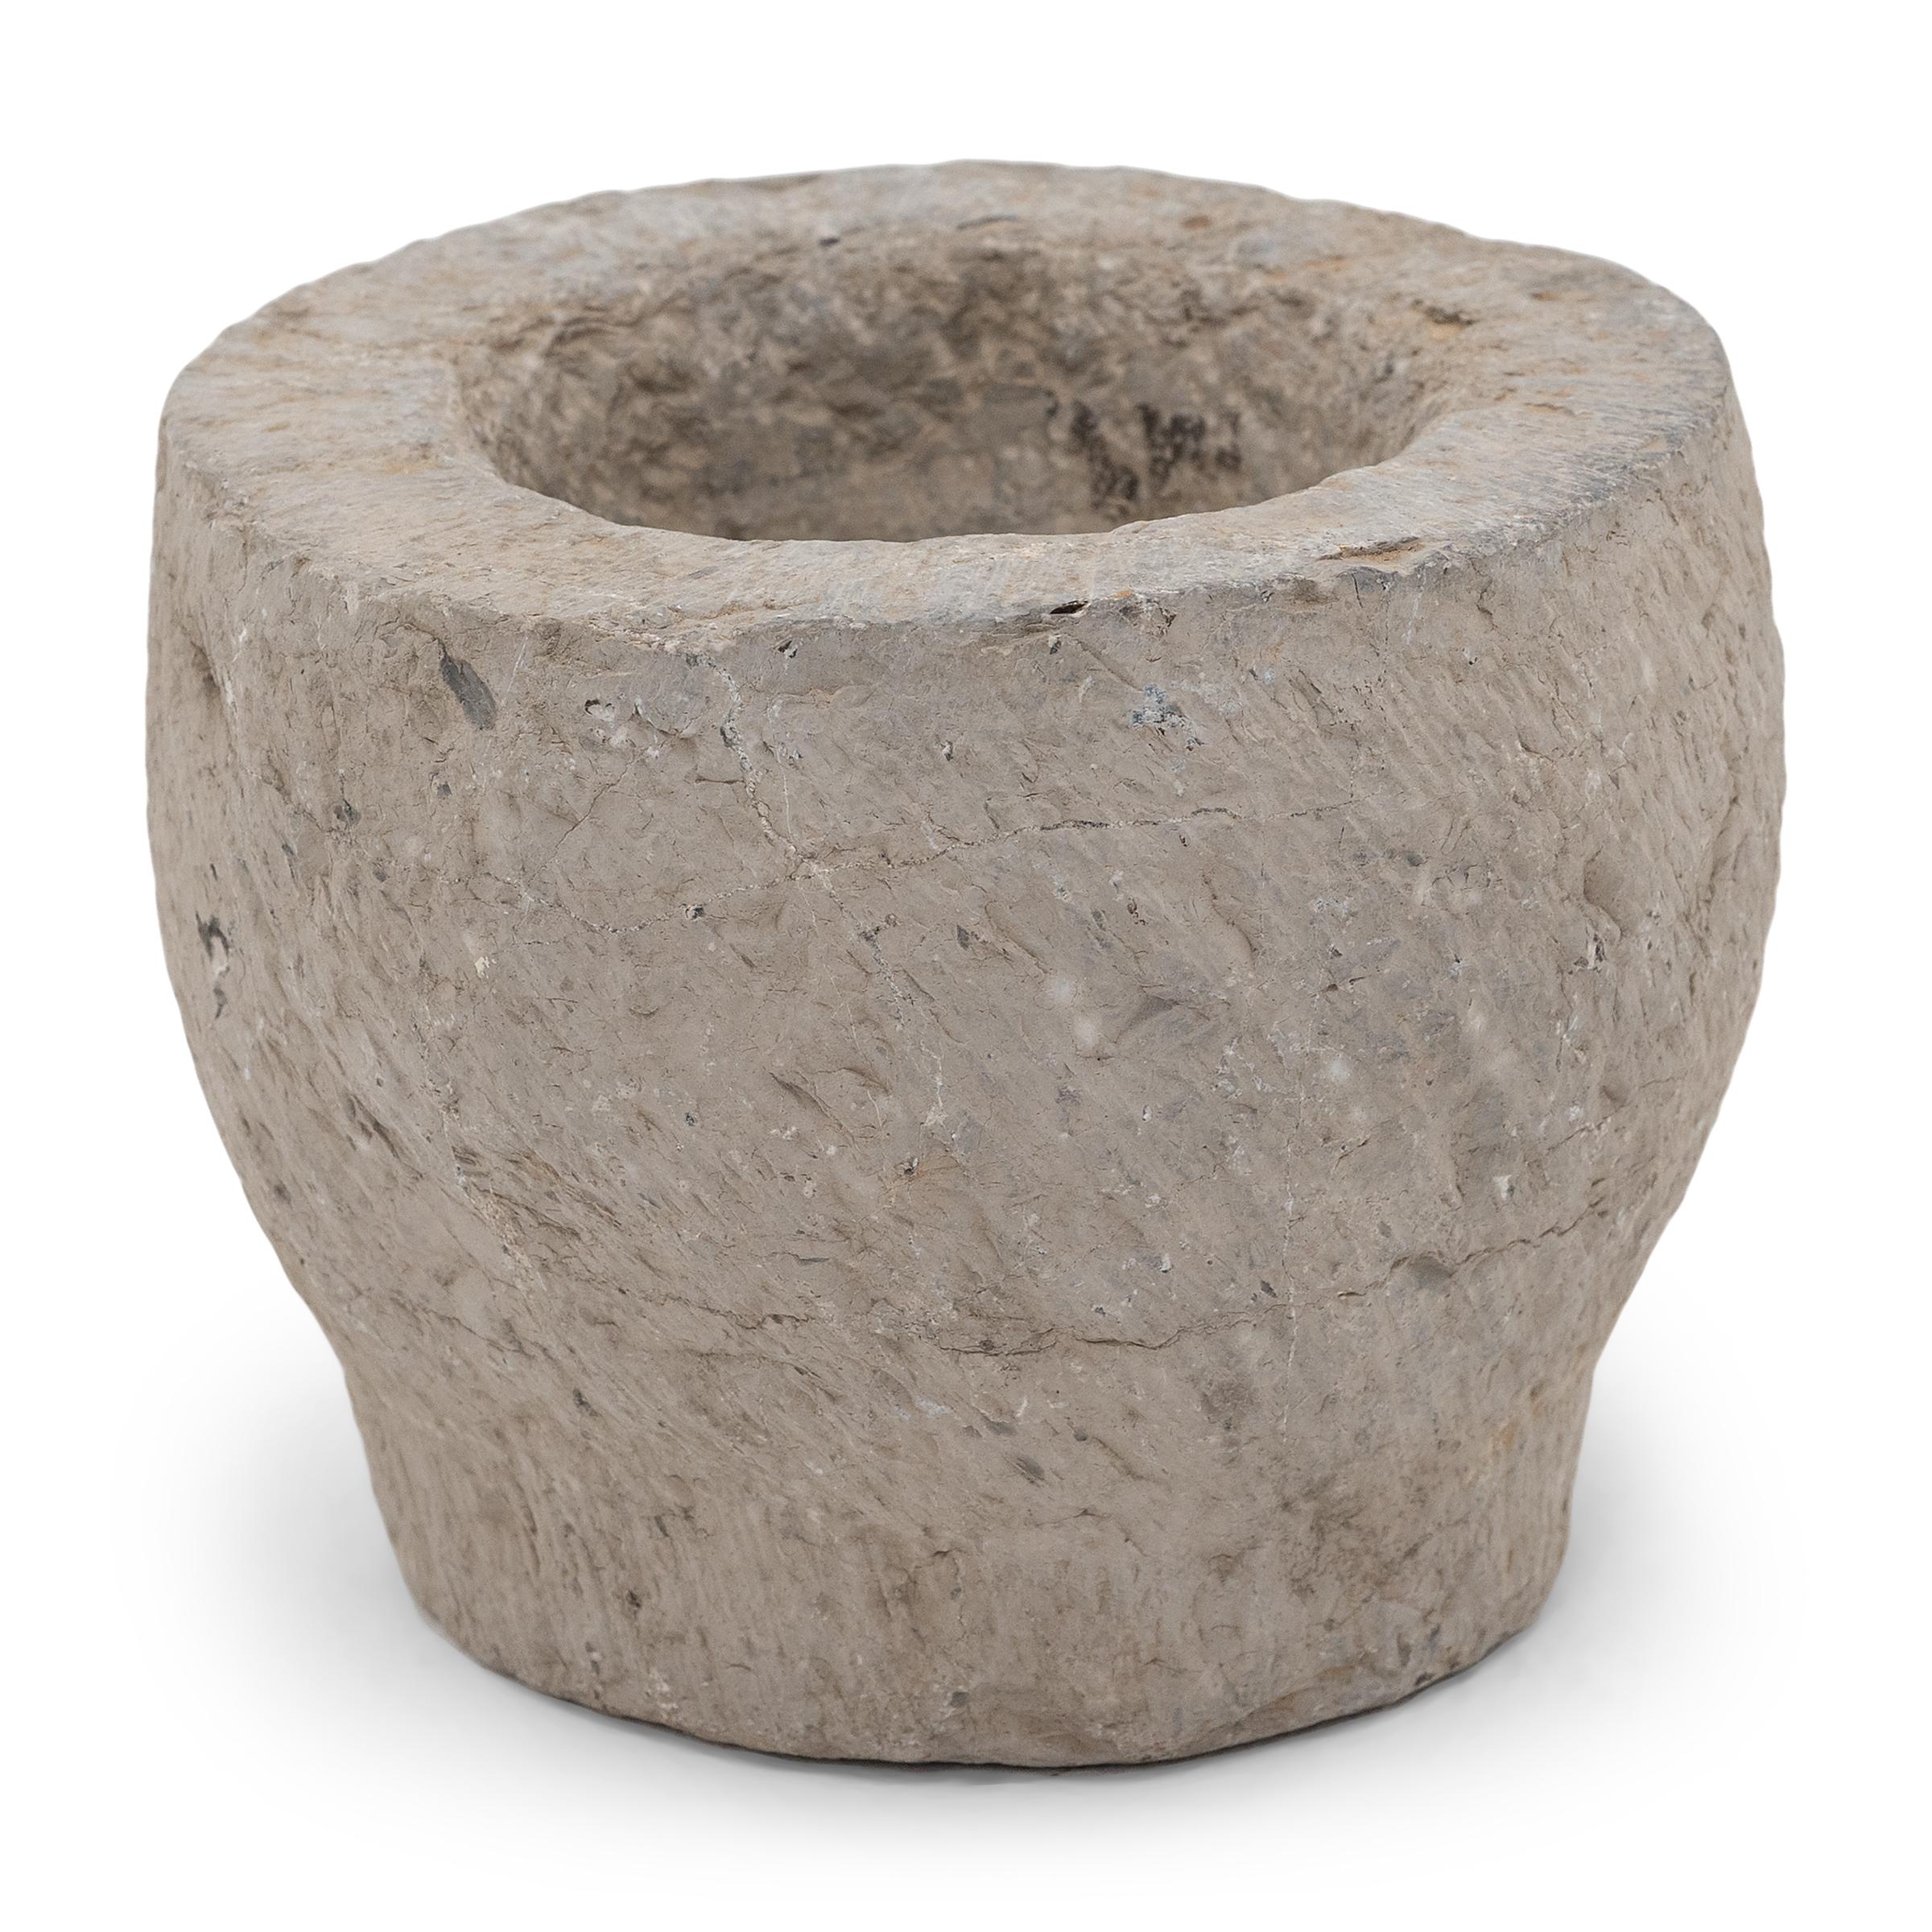 Sculpté dans un seul bloc de calcaire, ce récipient en pierre est un mortier datant du début du XIXe siècle, utilisé autrefois pour broyer des épices, des herbes et d'autres condiments. L'extérieur rustique, ciselé à la main, est magnifiquement usé